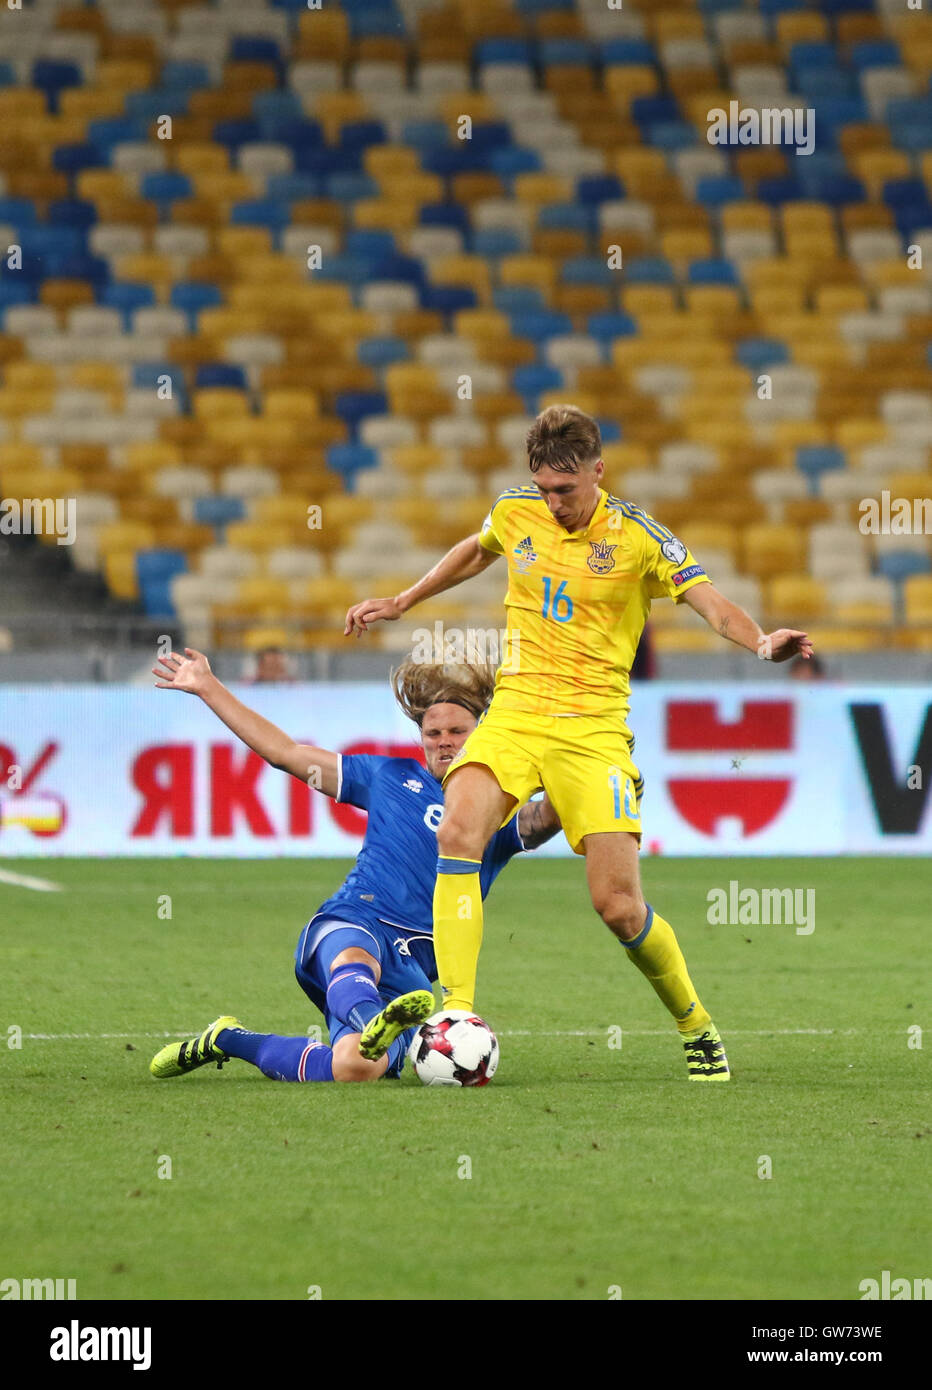 Serhiy Sydorchuk d'Ukraine (en jaune) se bat pour une balle avec Birkir Bjarnason d'Islande au cours de leur Coupe du Monde FIFA 2018 jeu Banque D'Images